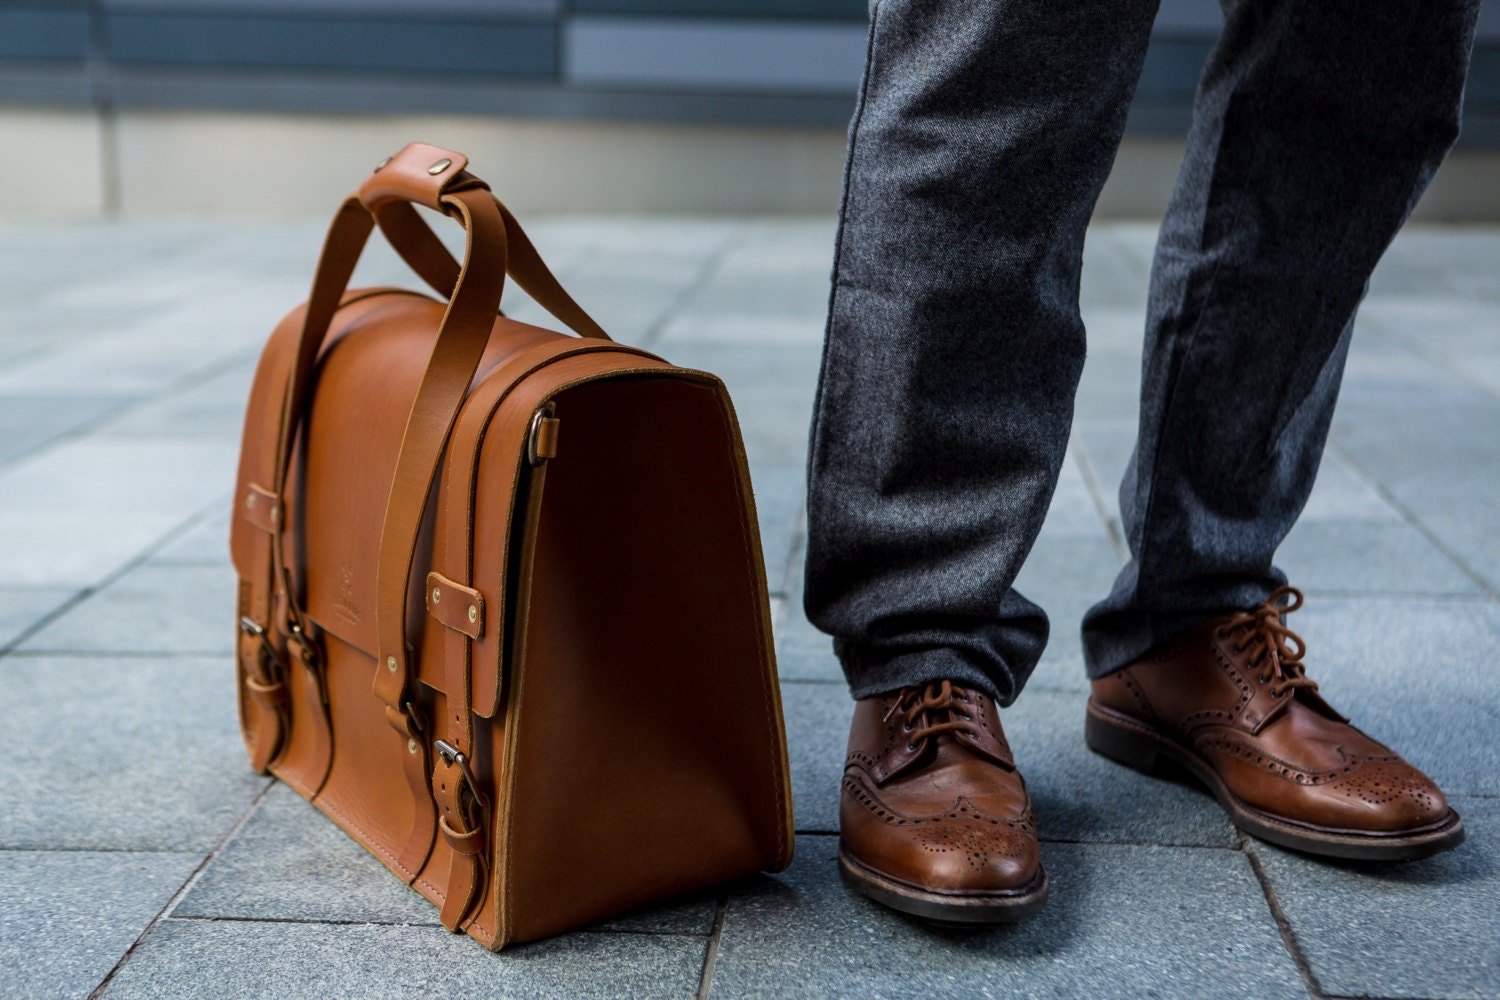 Men's Leather Weekender Bag Weekend Bag Cabin Luggage | Etsy